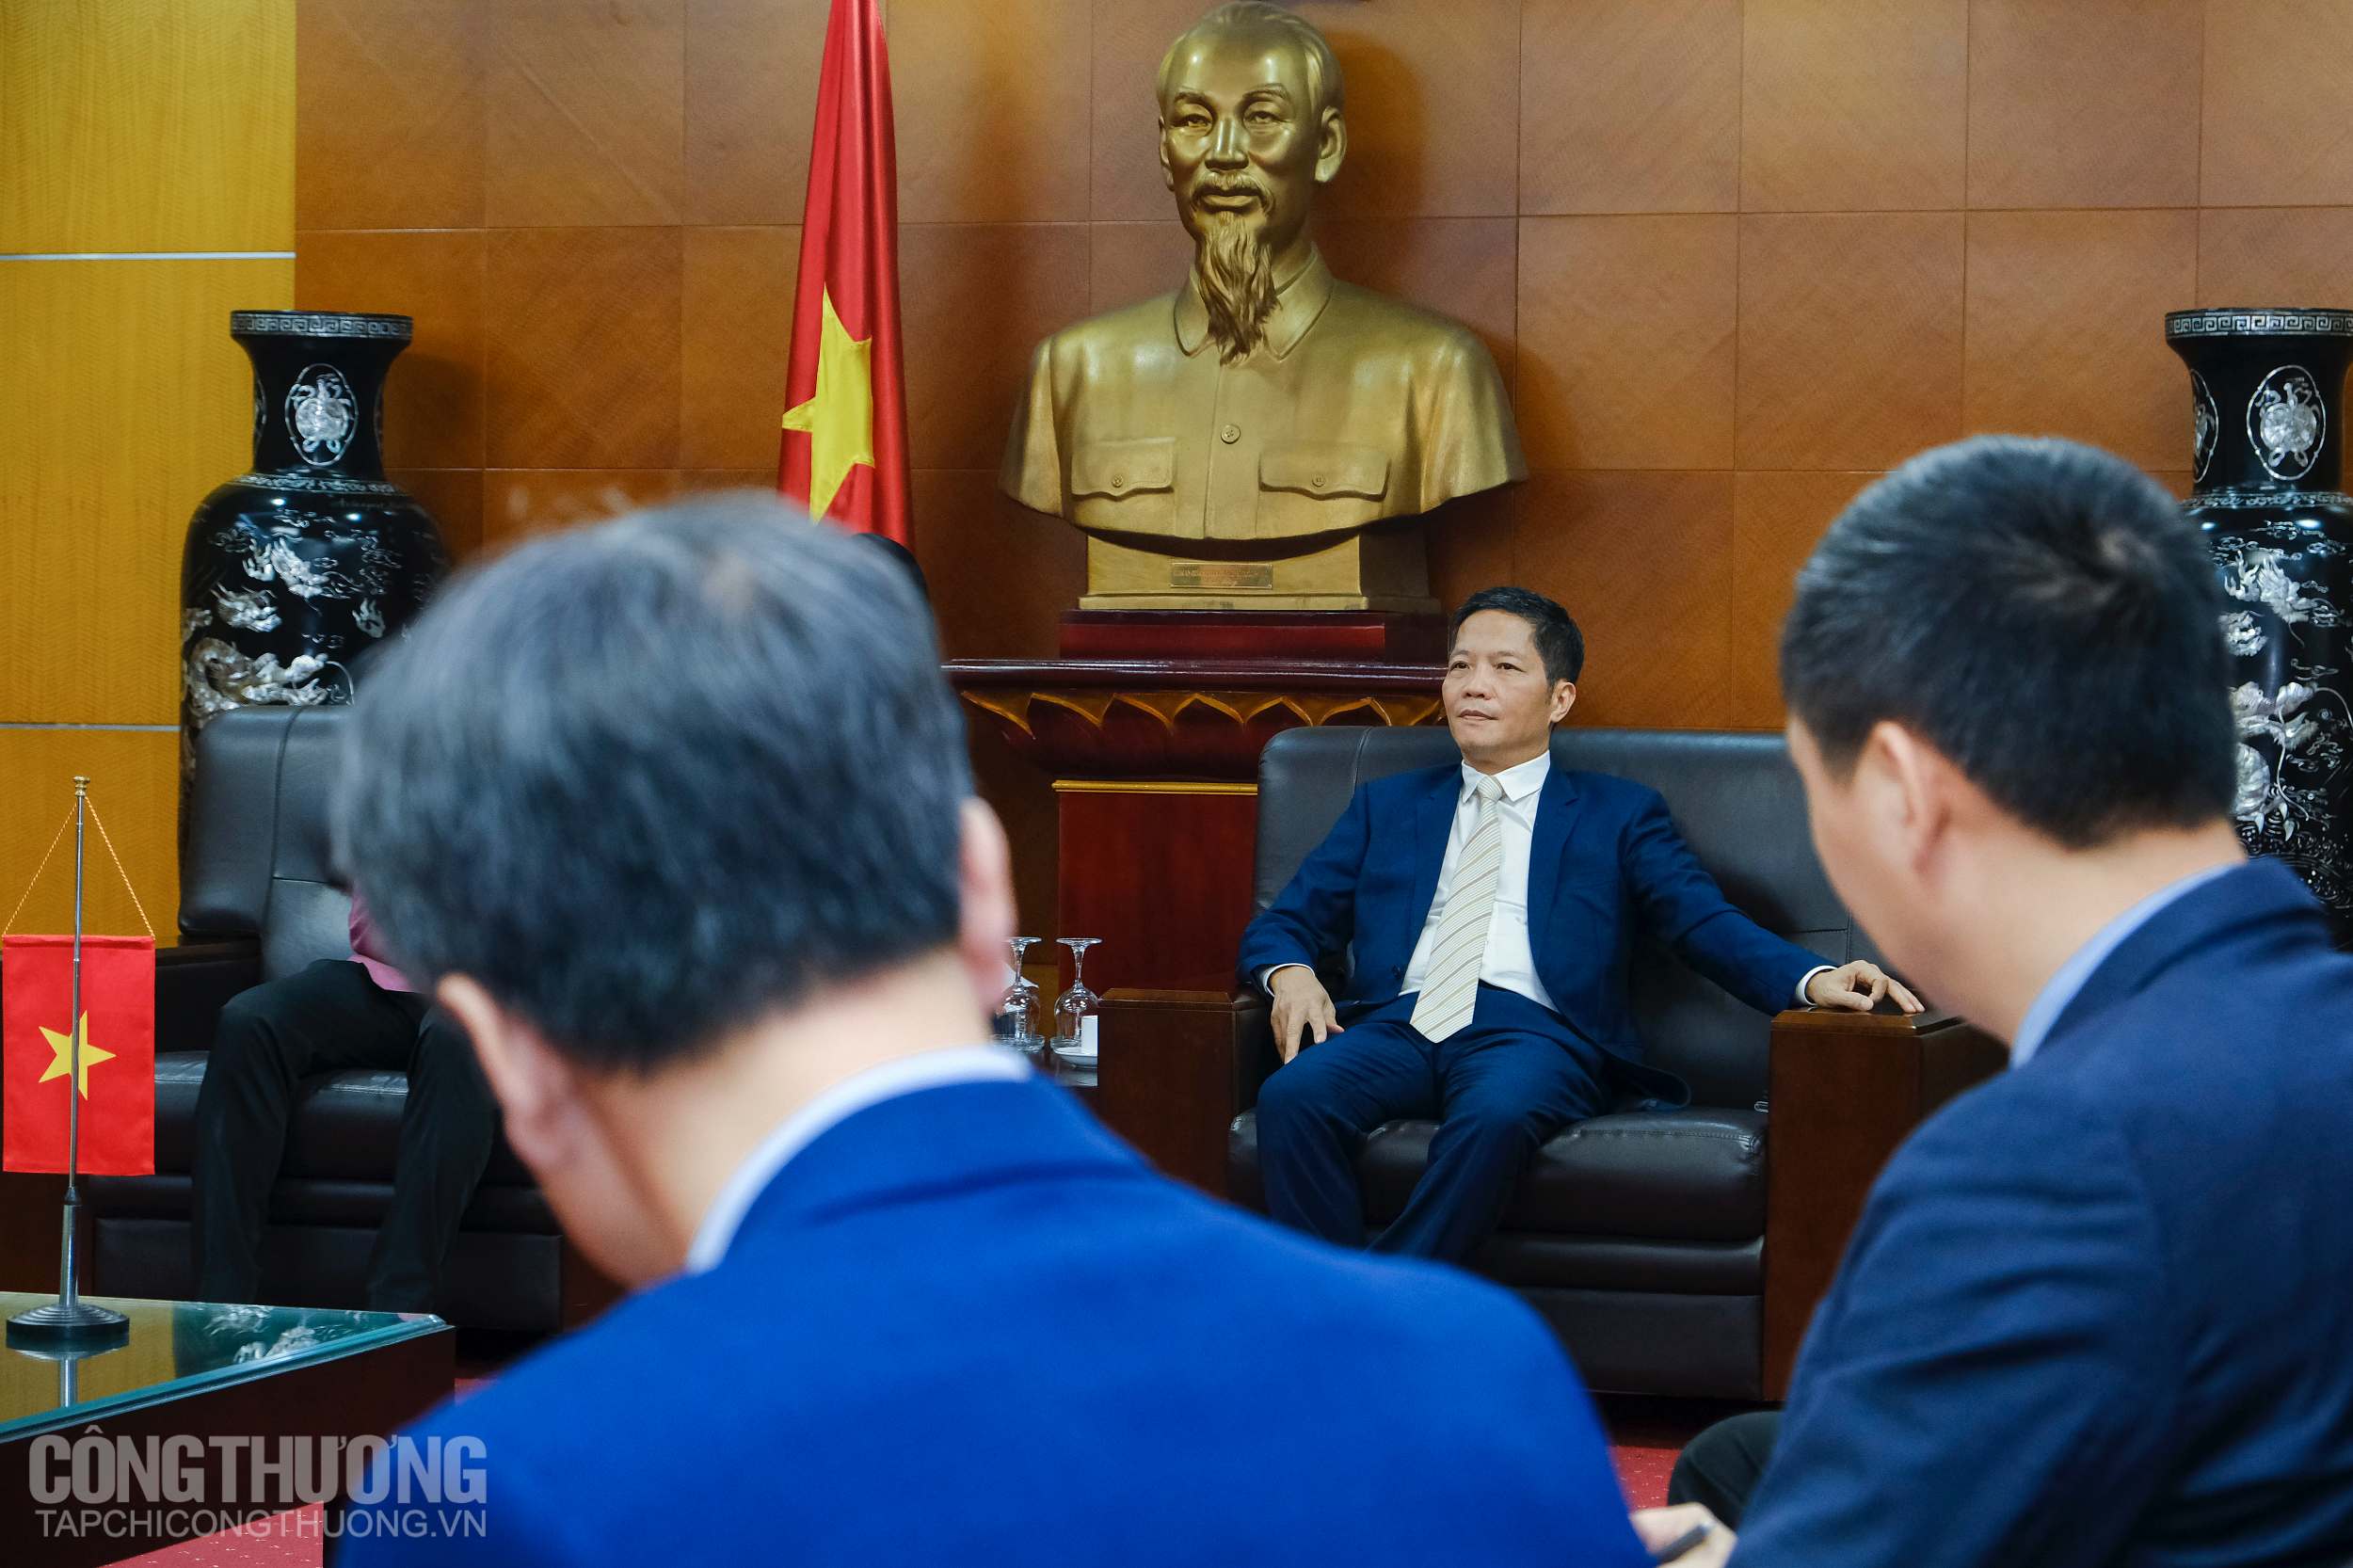 Bộ trưởng Trần Tuấn Anh đánh giá cao những bước tiến trong mối quan hệ Việt Nam - Thái Lan trong thời gian qua